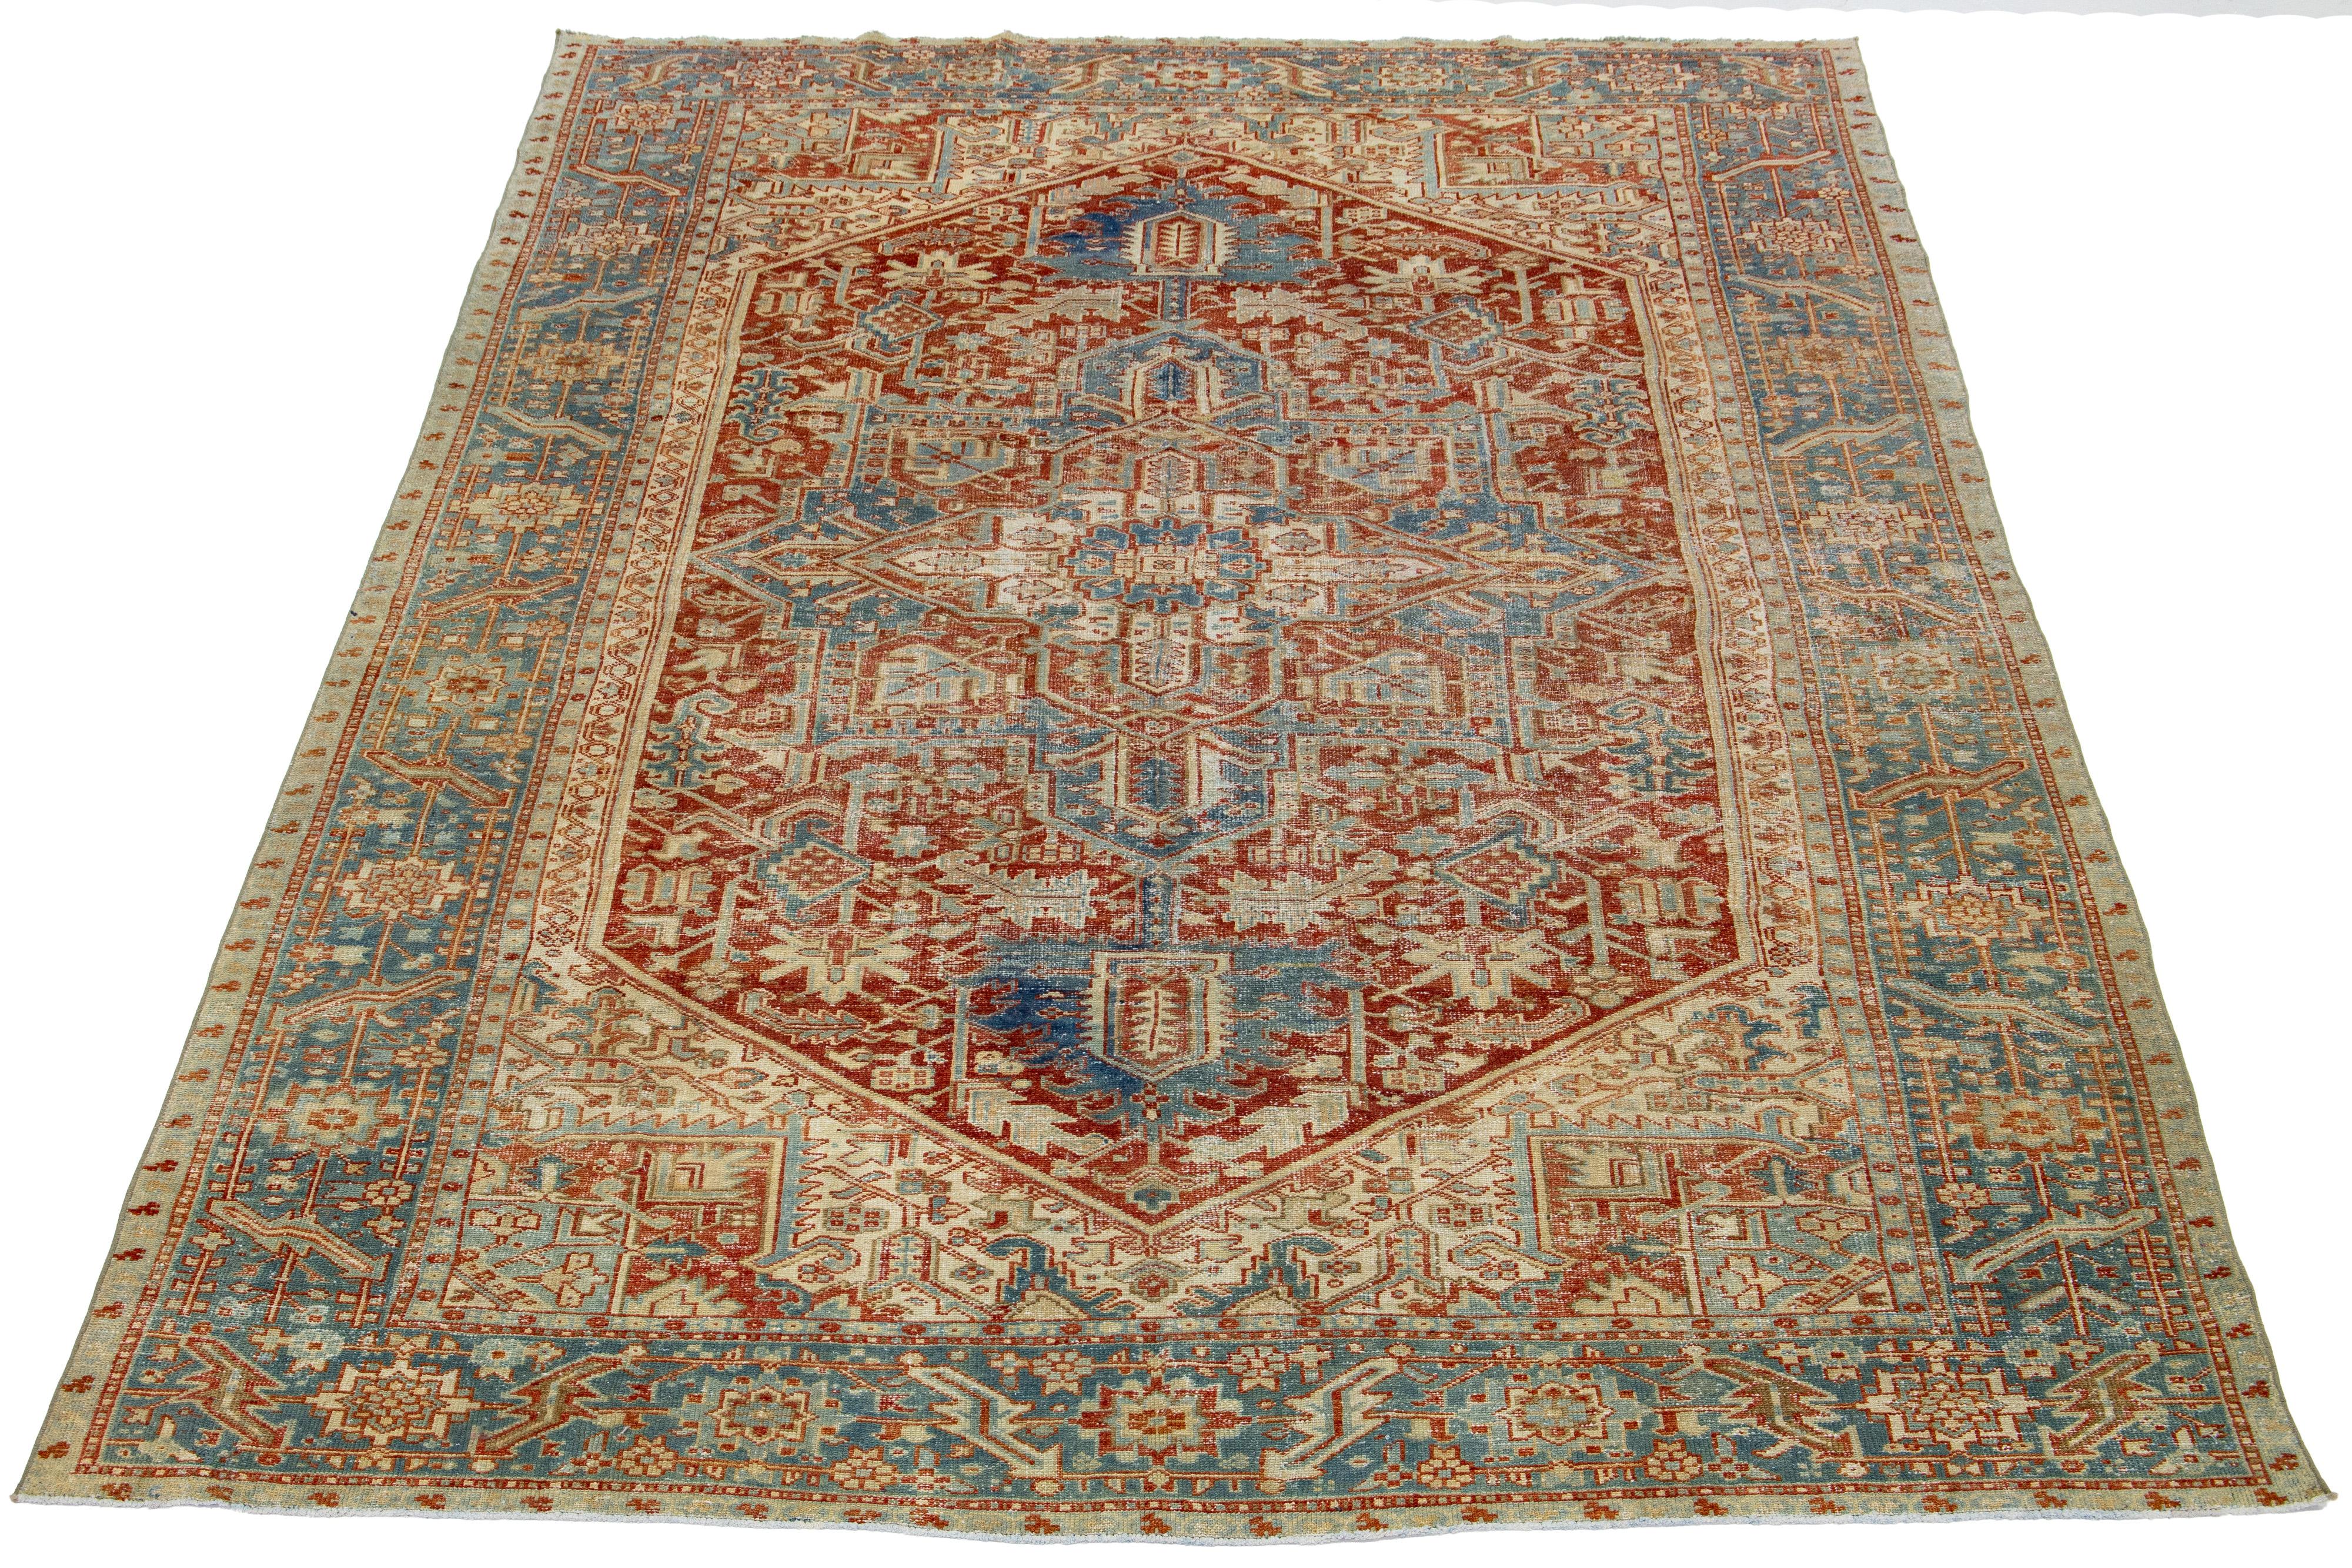 Dieser handgeknüpfte persische Heriz-Teppich aus Wolle zeigt ein atemberaubendes Allover-Muster in Blau-, Braun- und Elfenbeinschattierungen auf einem rostroten Feld.

Dieser Teppich misst 7'11' x 11'.

Unsere Teppiche werden vor dem Versand